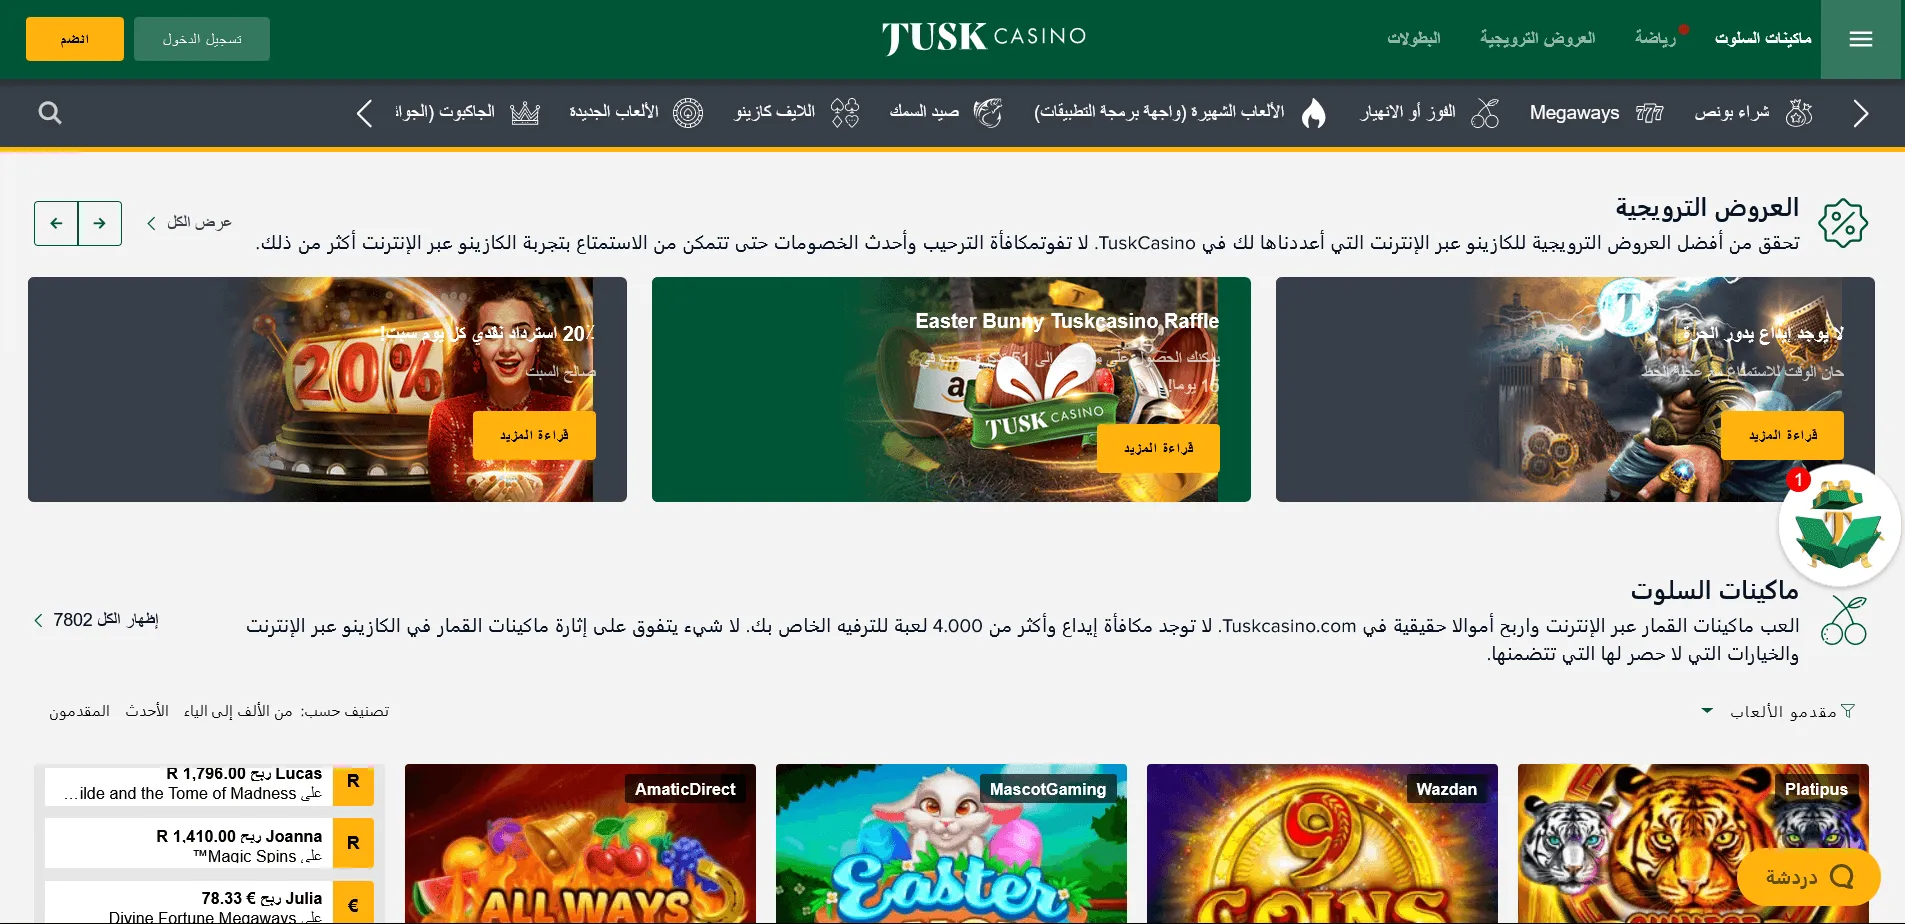 شروط التسجيل في Tusk Casino وأشهر ألعابه